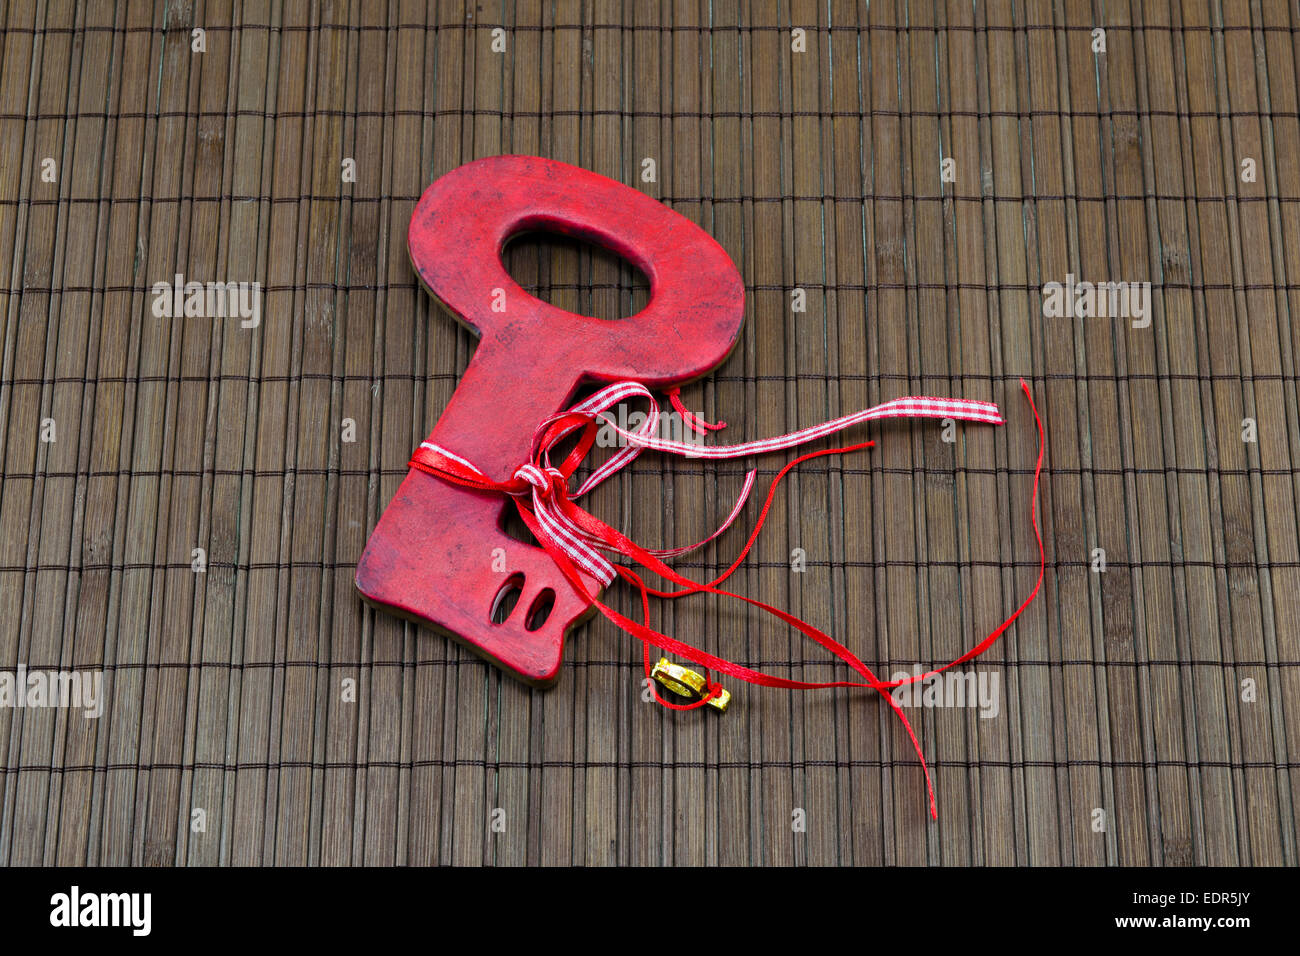 Red Valentine's key sur une surface en bois avec un ruban autour d'elle Banque D'Images